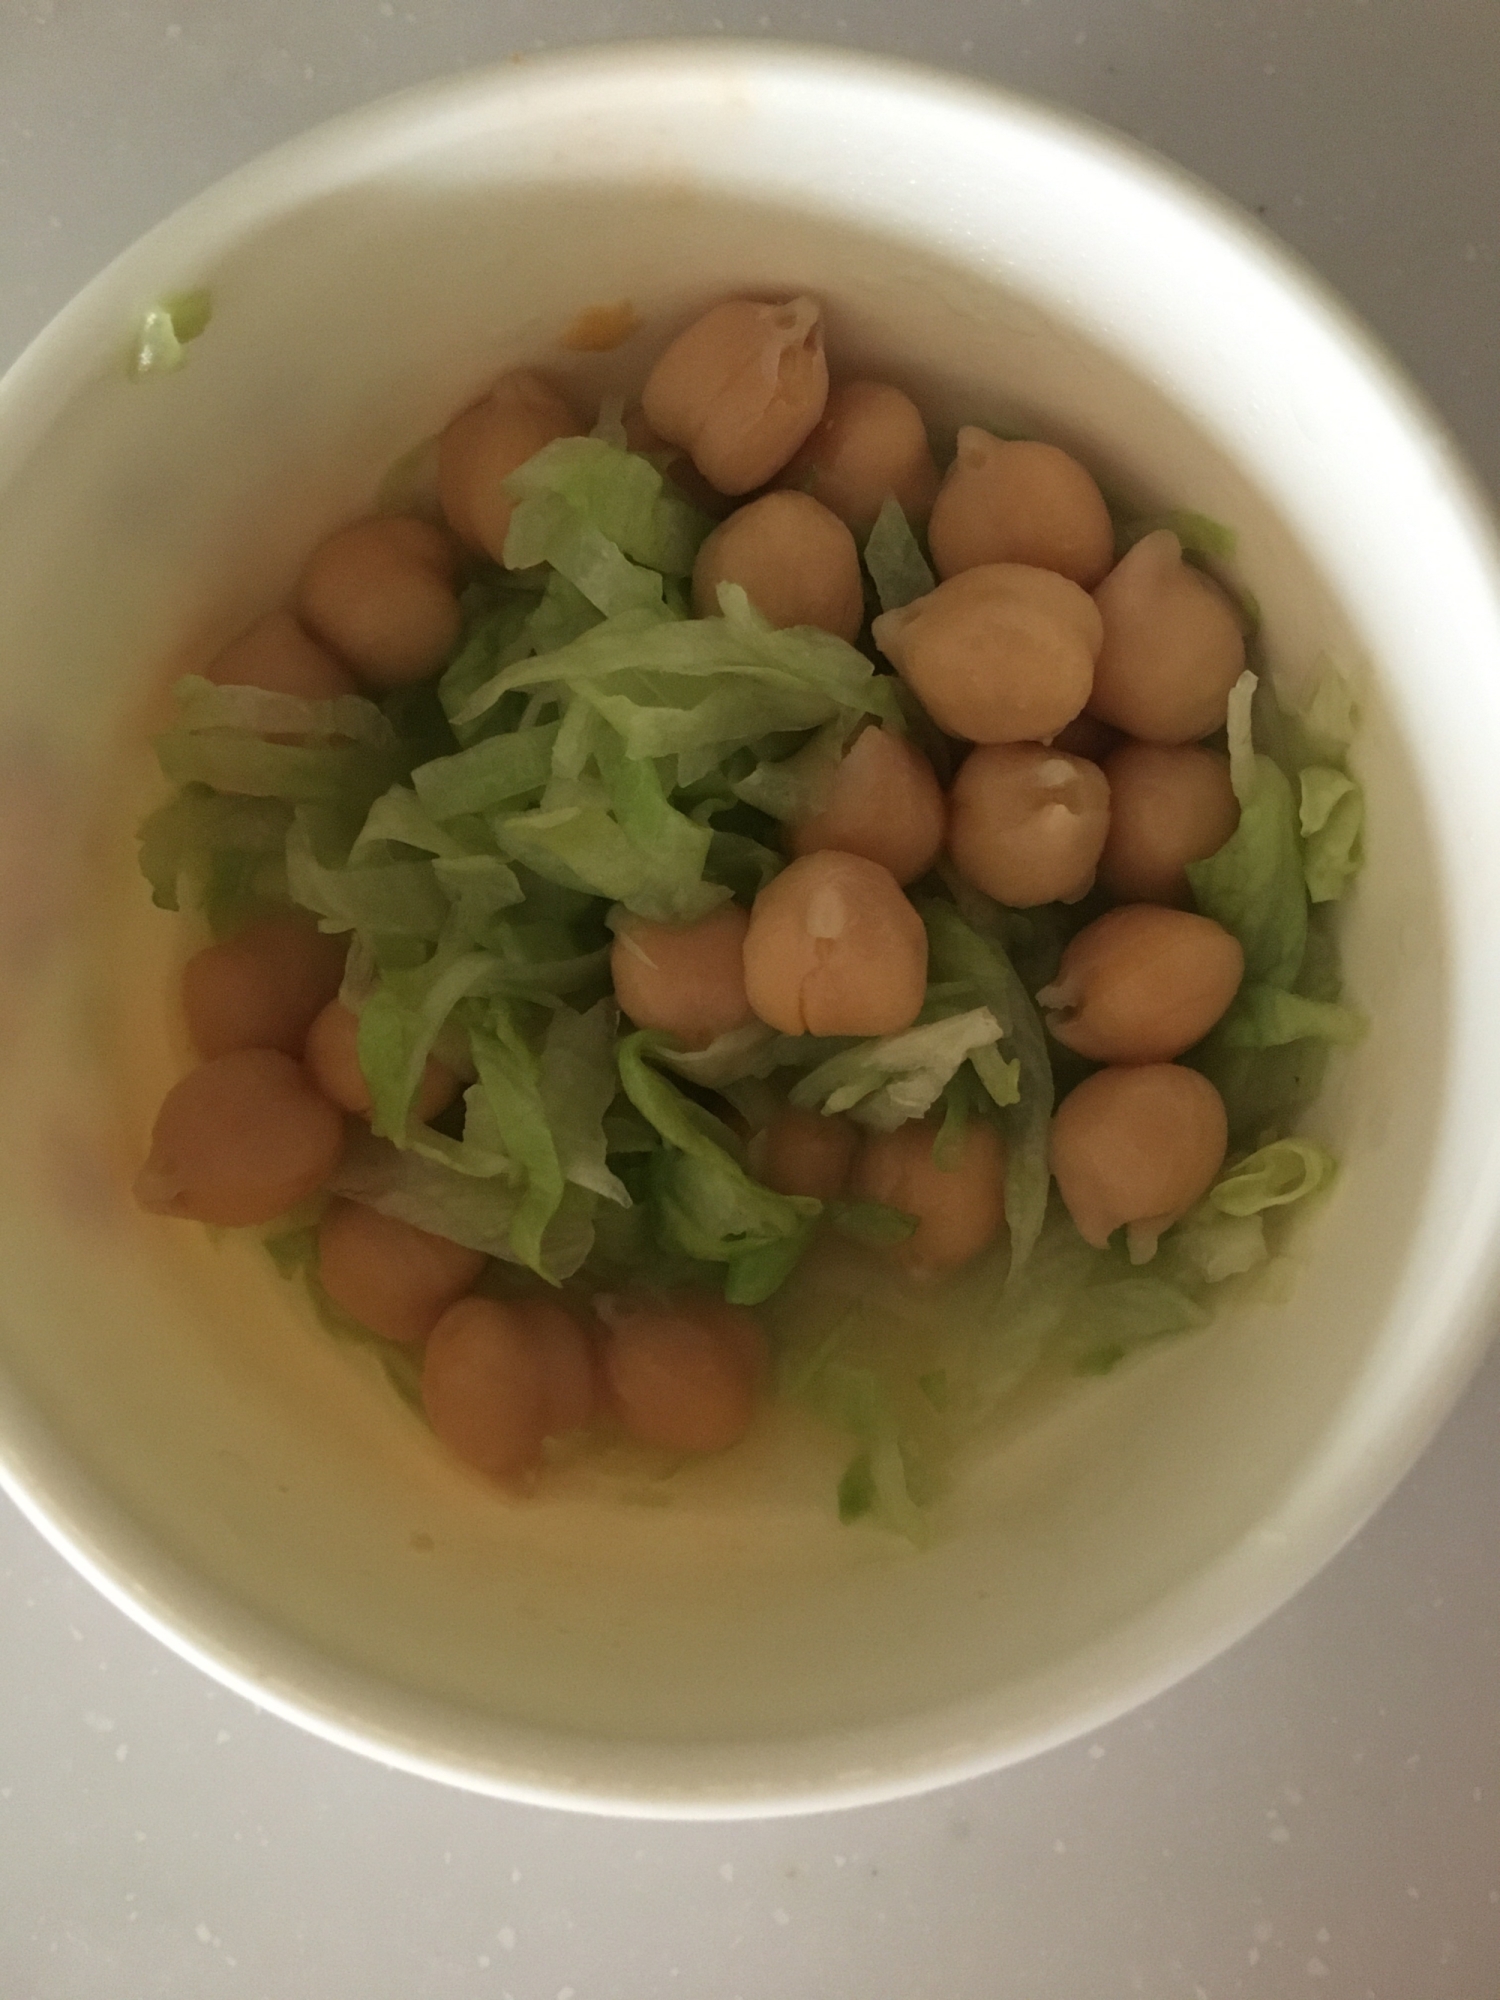 ひよこ豆とキャベツのマヨネーズサラダ